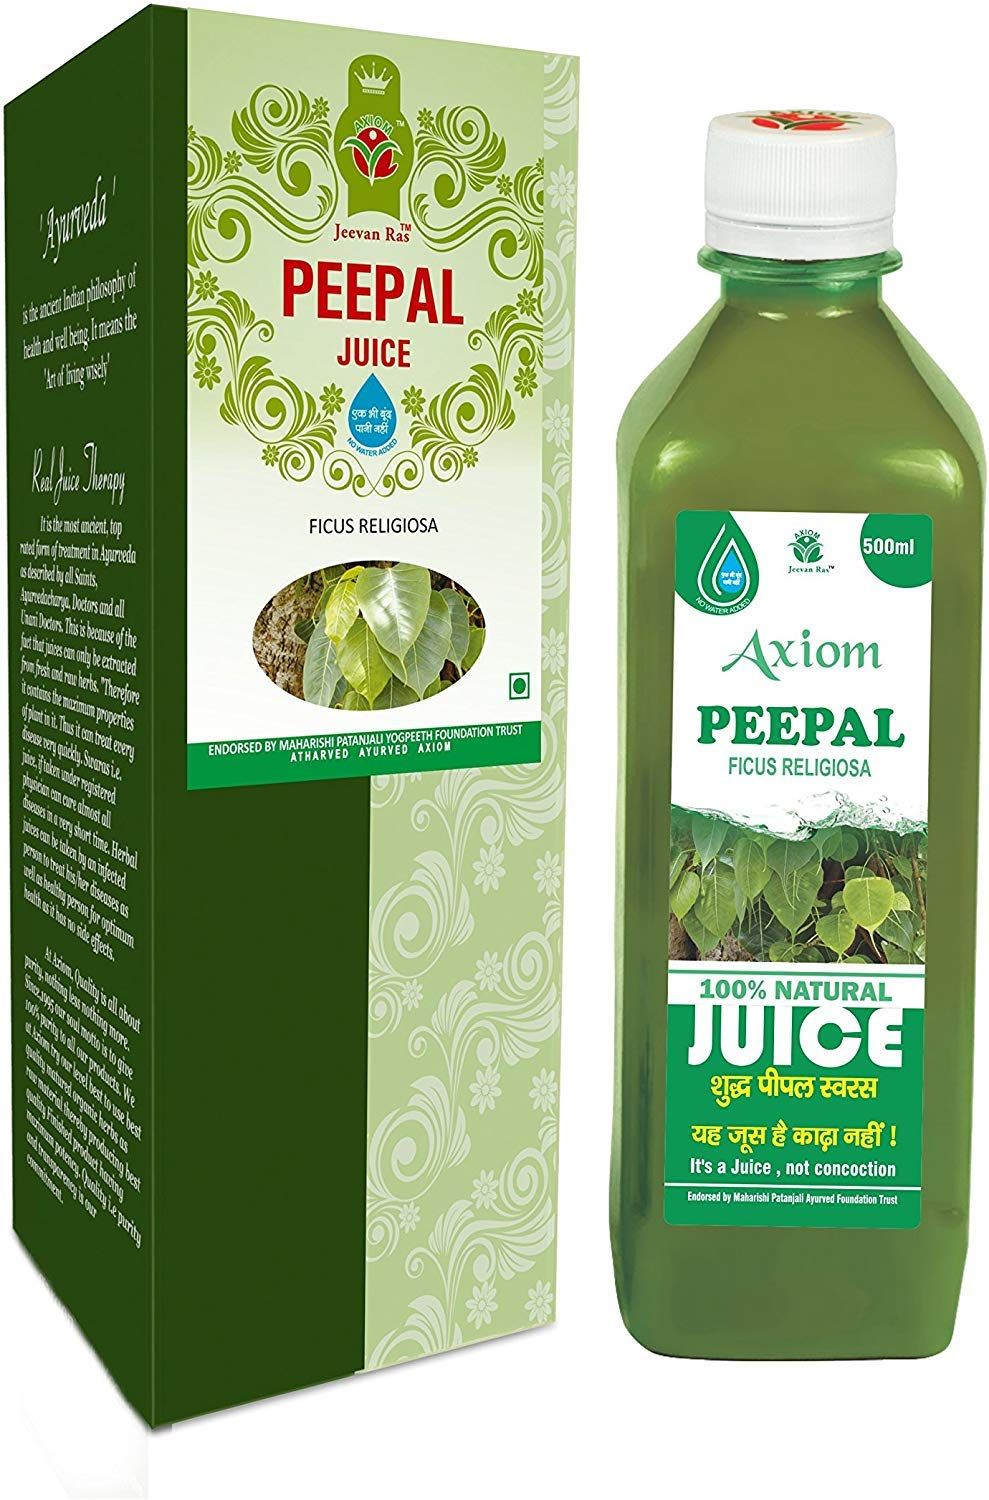 Axiom Peepal Juice Image